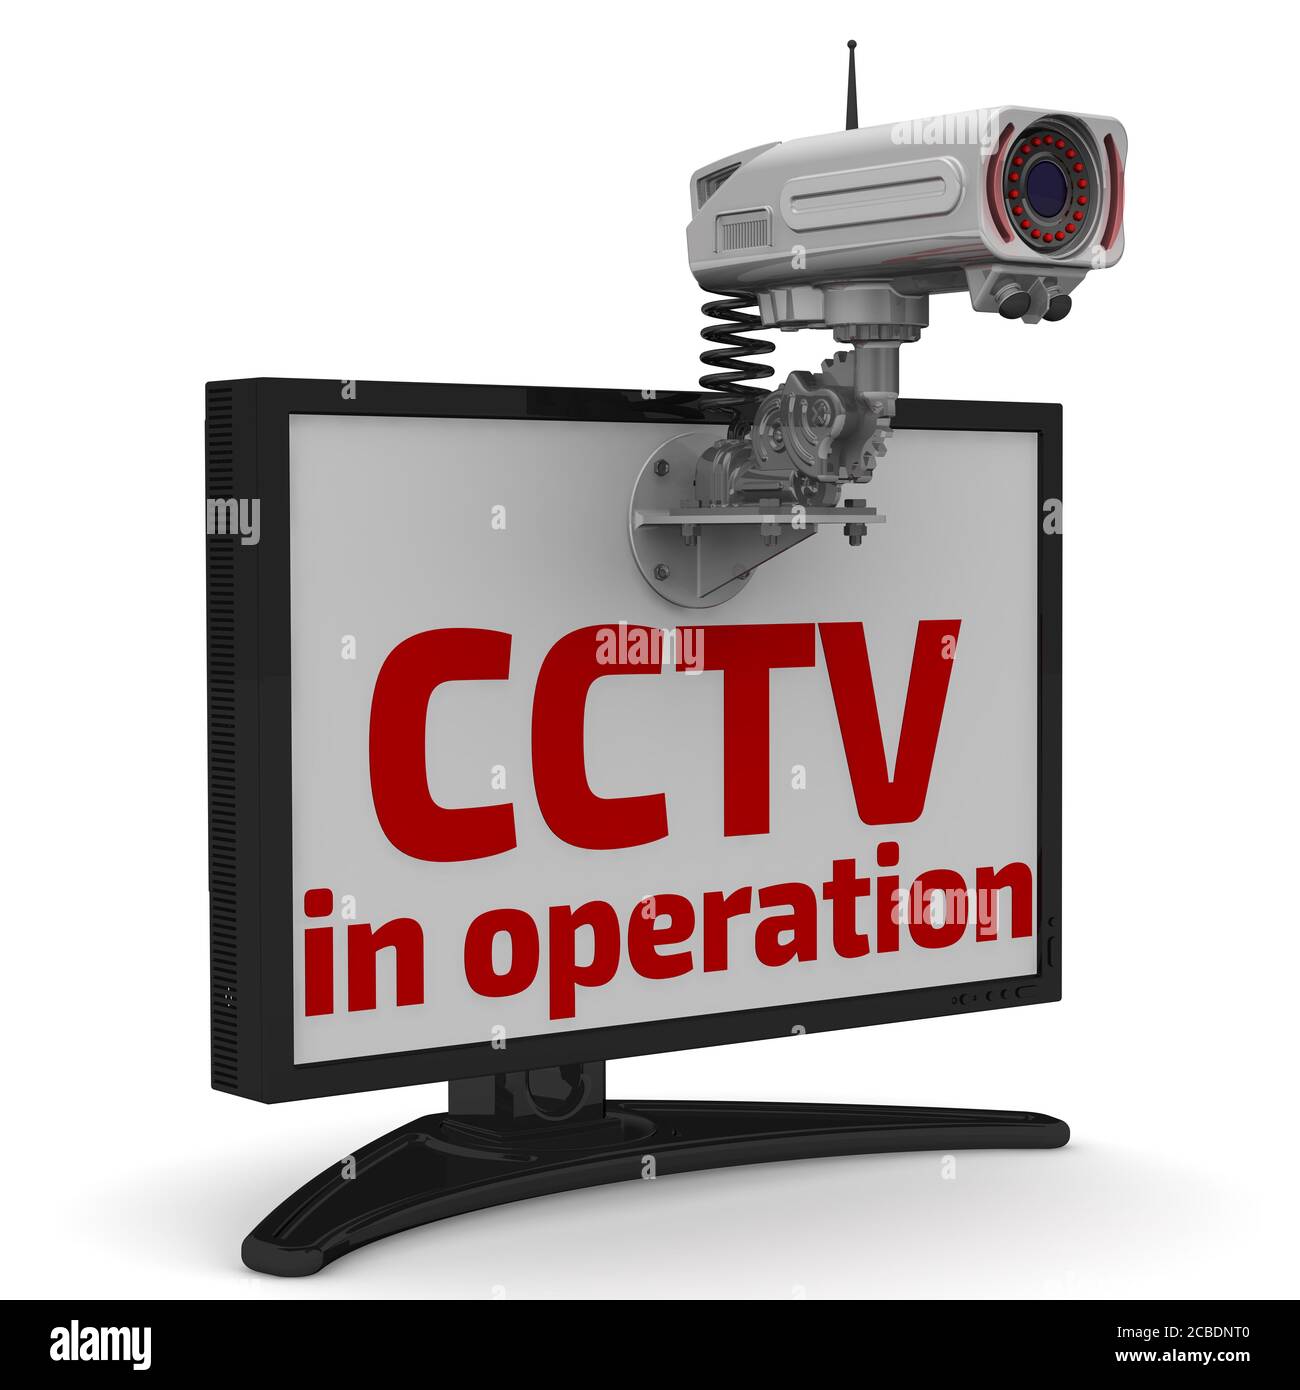 CCTV en fonctionnement. Caméra et moniteur CCTV. Texte rouge CCTV en fonctionnement et caméra CCTV sur le moniteur. Illustration 3D Banque D'Images